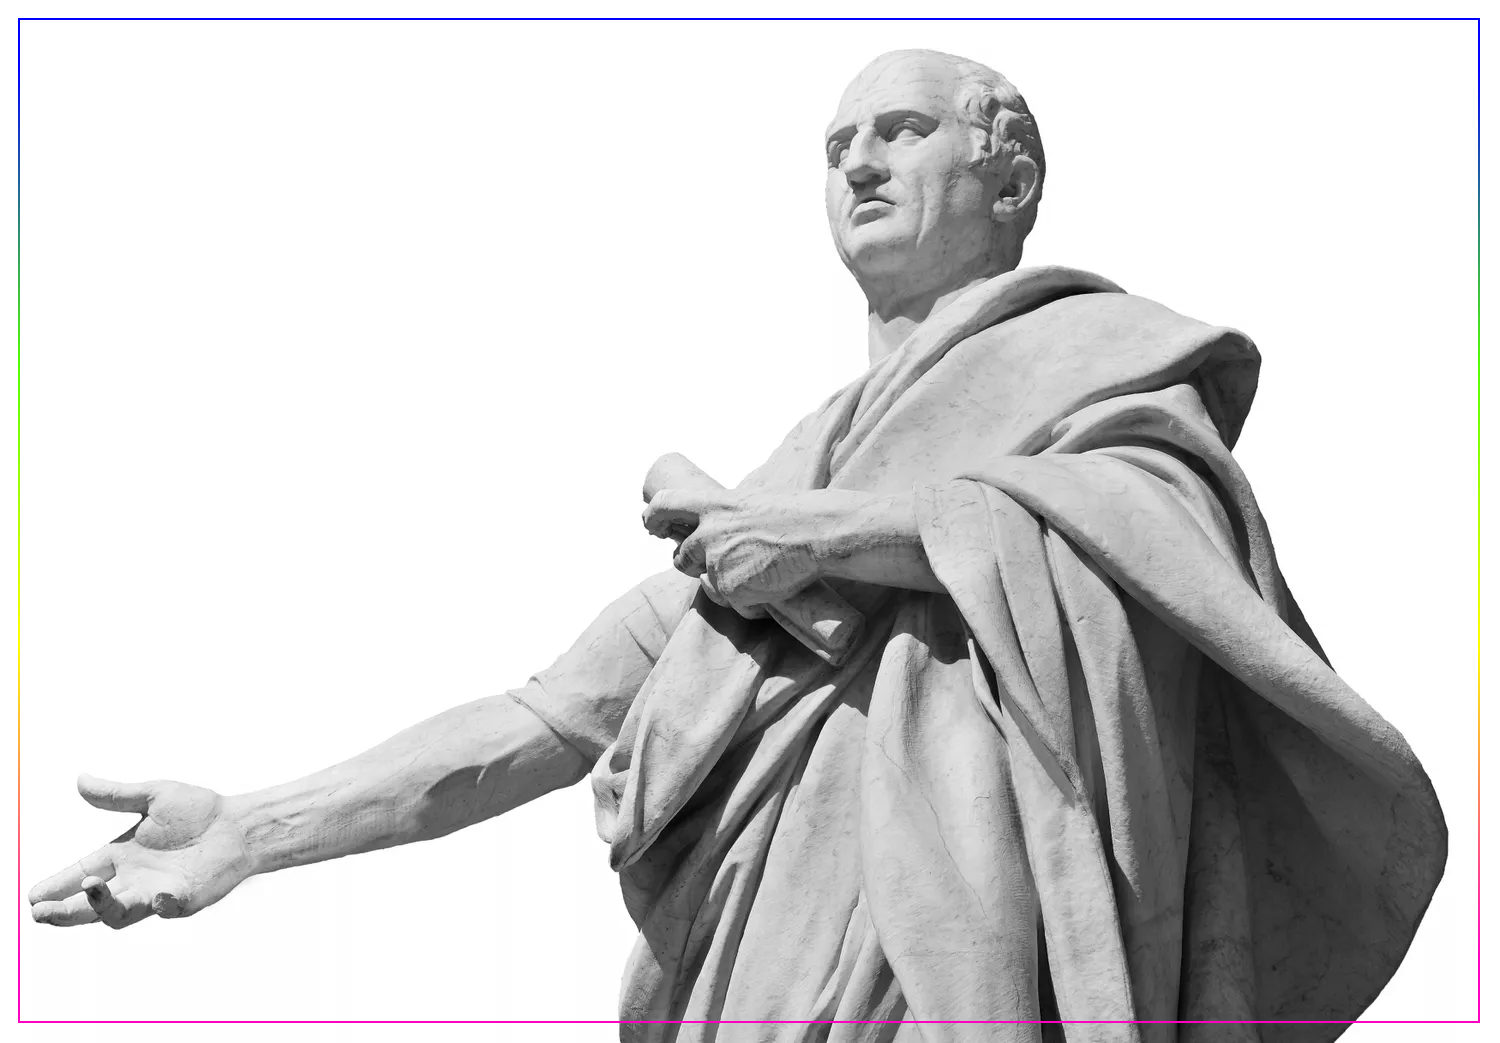 Цицерон, величайший оратор Древнего Рима, мраморная статуя перед Старым дворцом правосудия в Риме (19 век). Источник: Crisfotolux/Getty Images